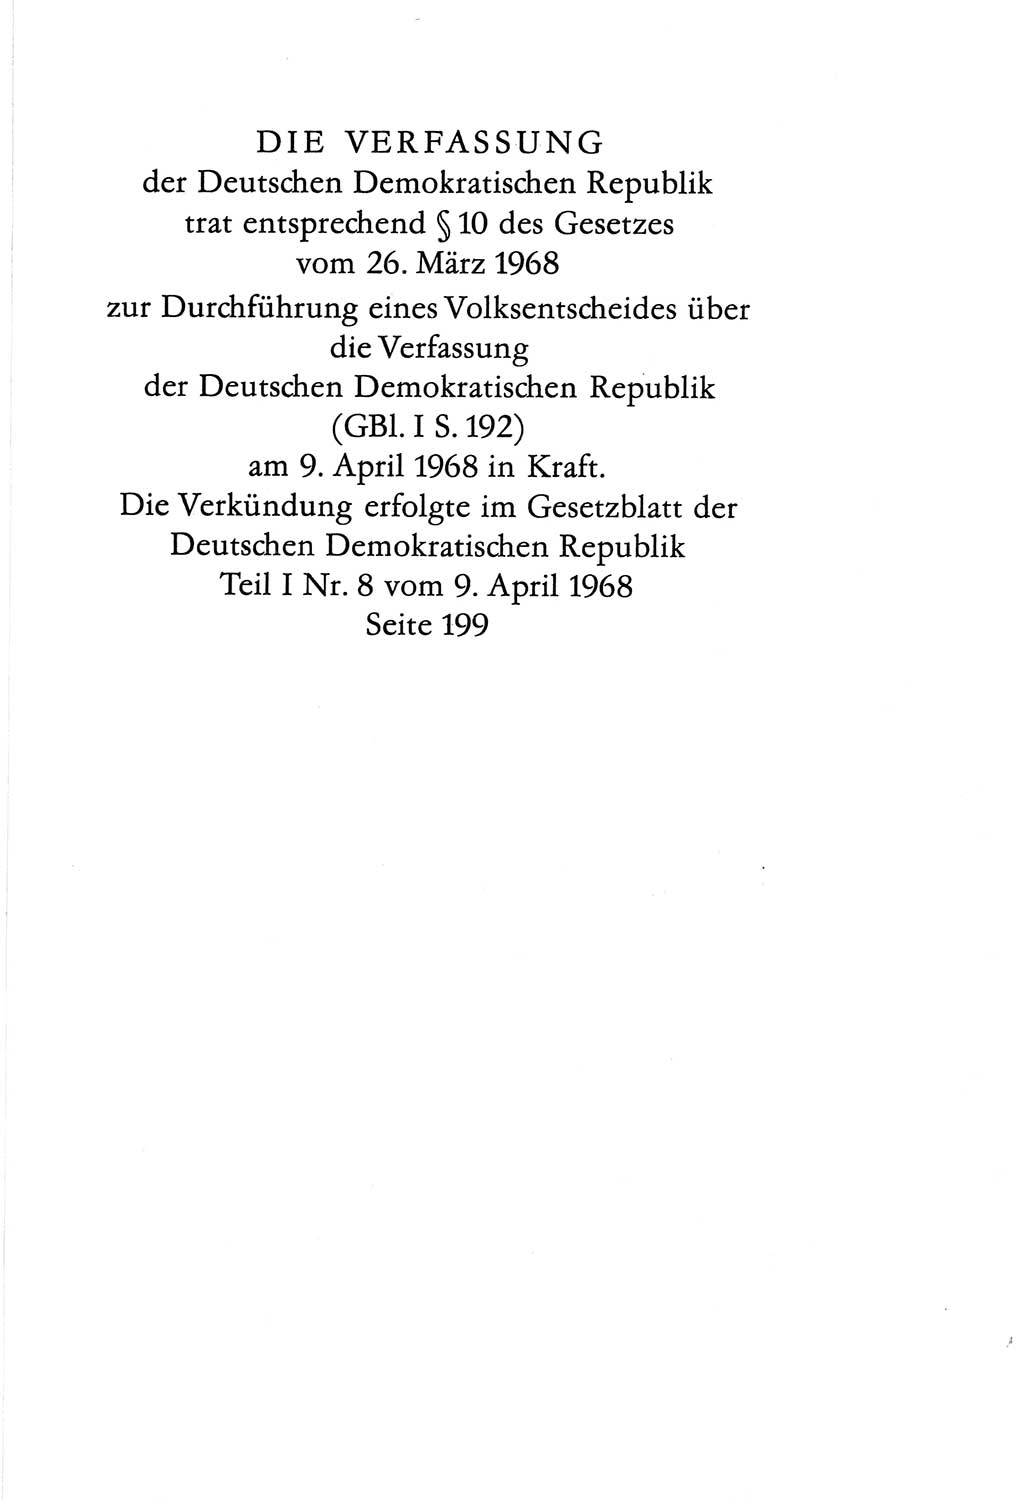 Verfassung der Deutschen Demokratischen Republik (DDR) vom 6. April 1968, Seite 79 (Verf. DDR 1968, S. 79)